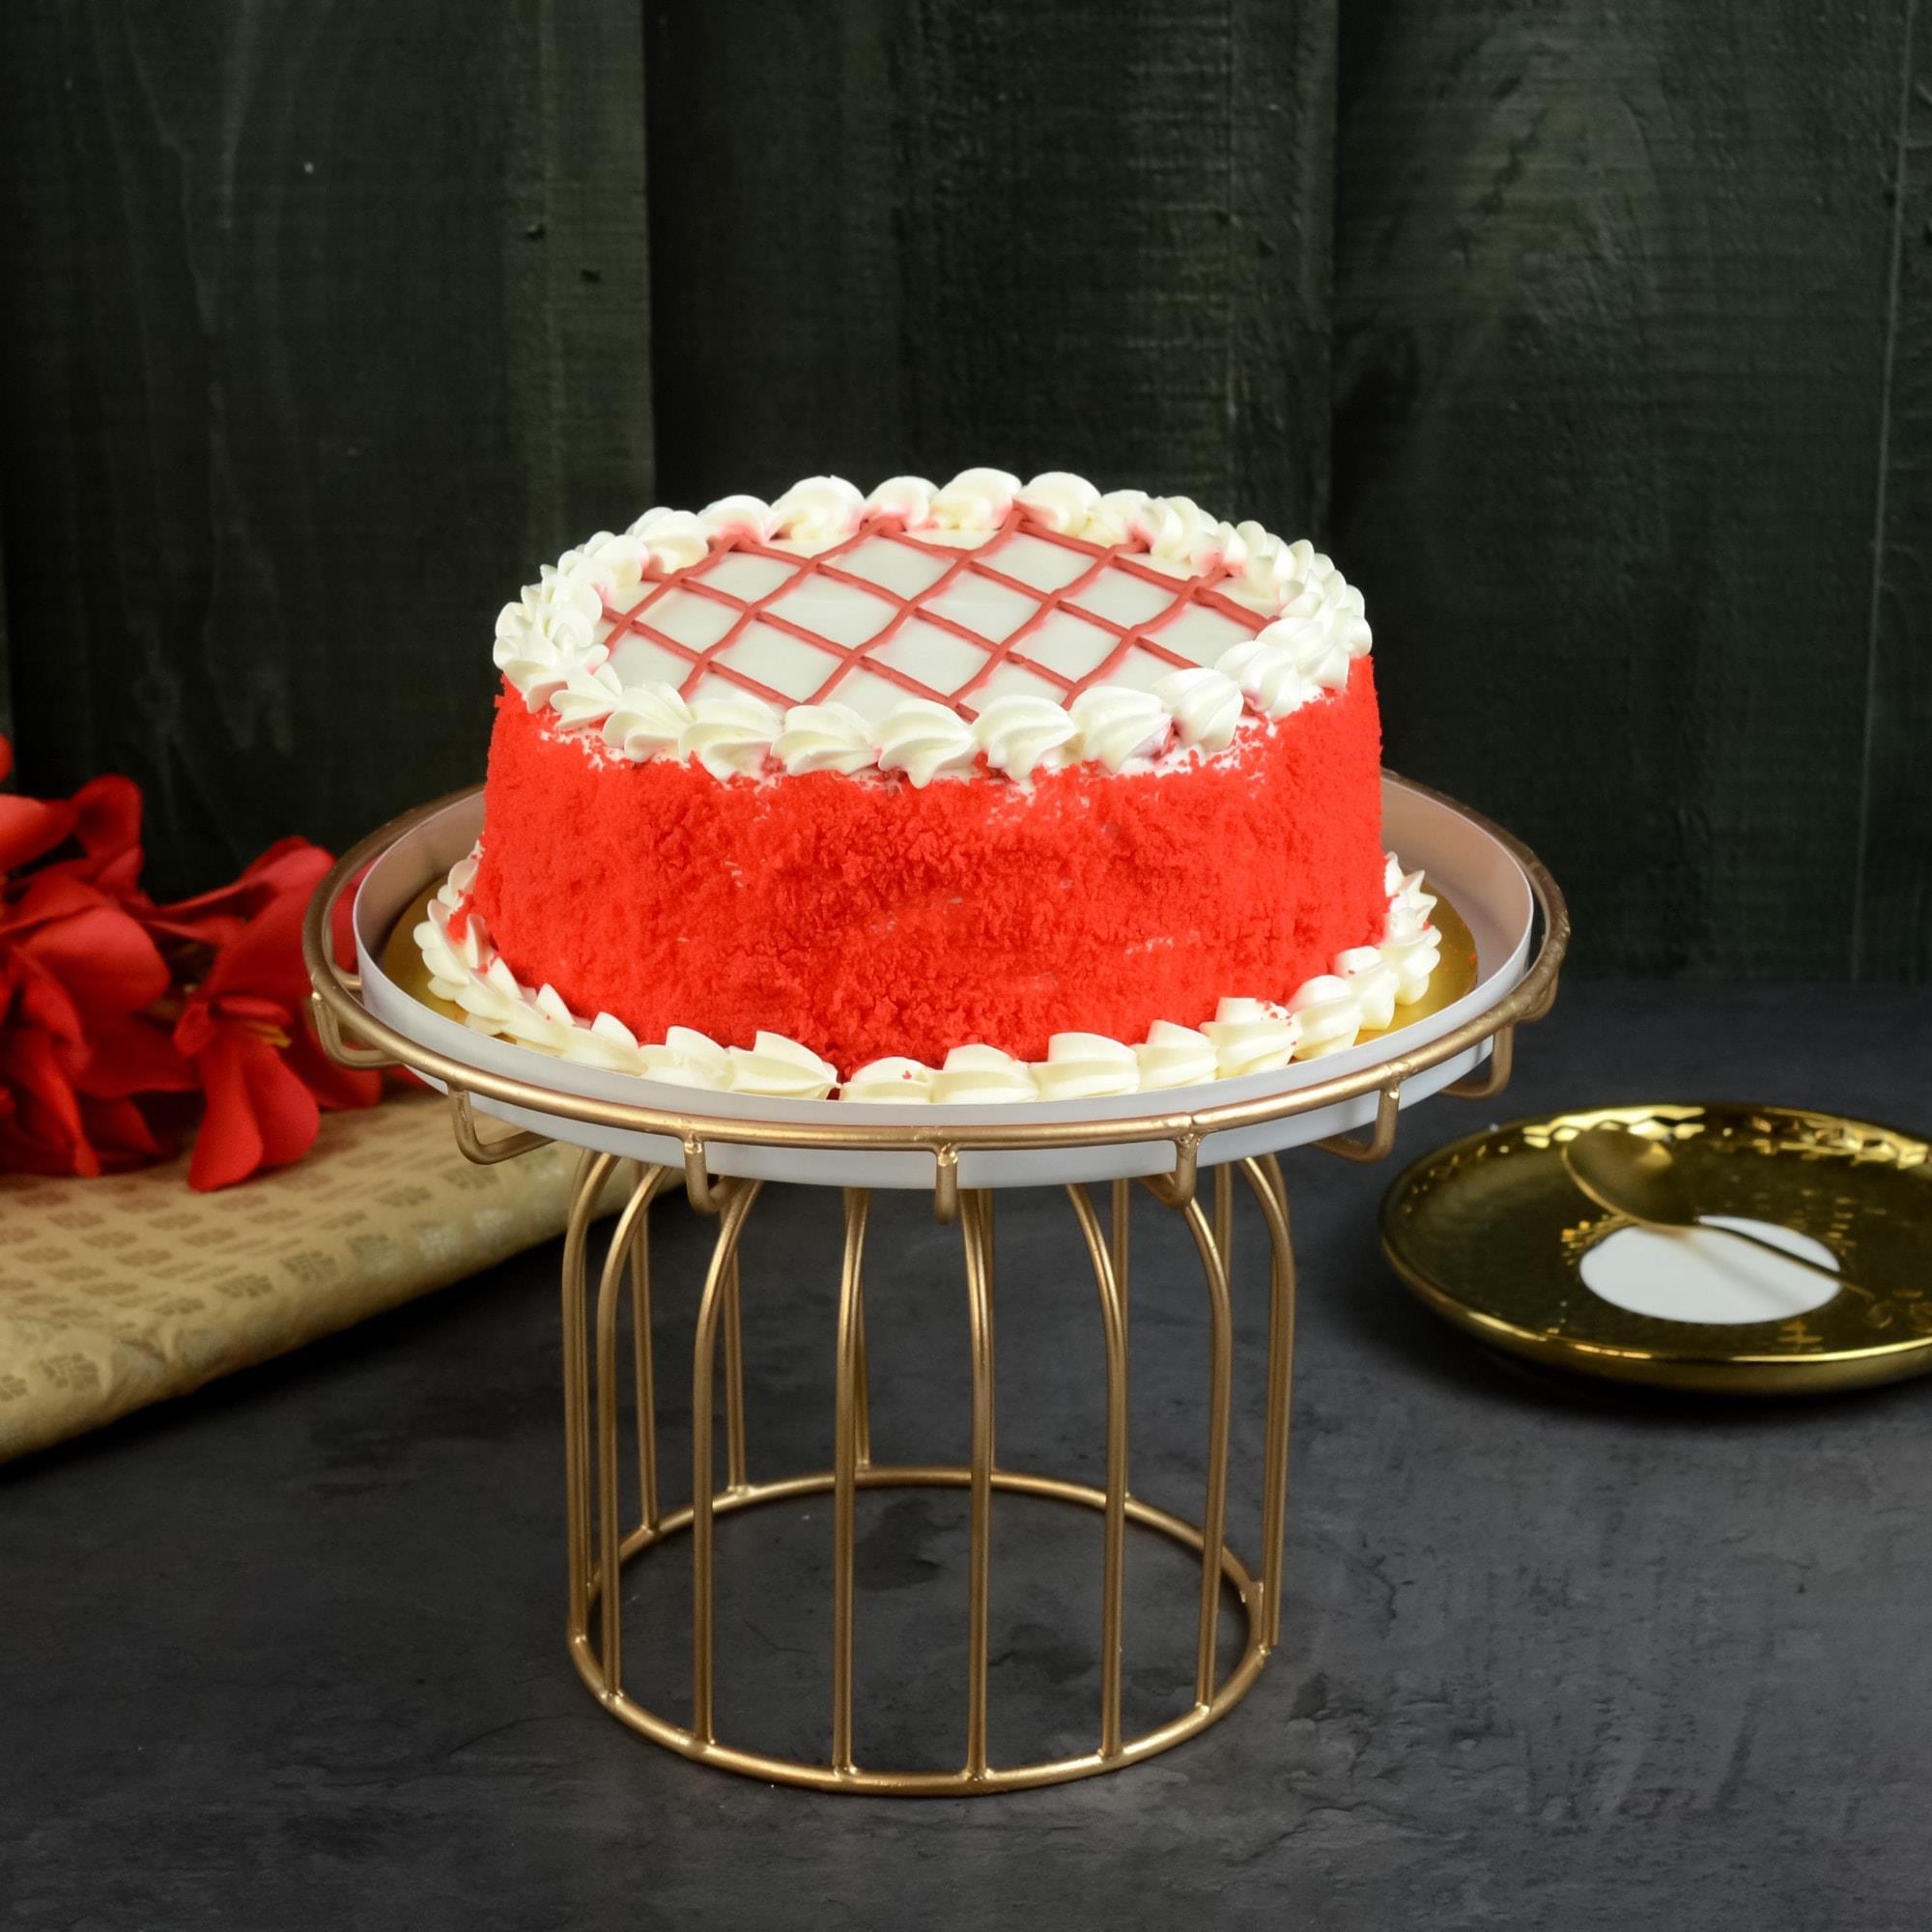 Red Velvet Cheesecake, 7